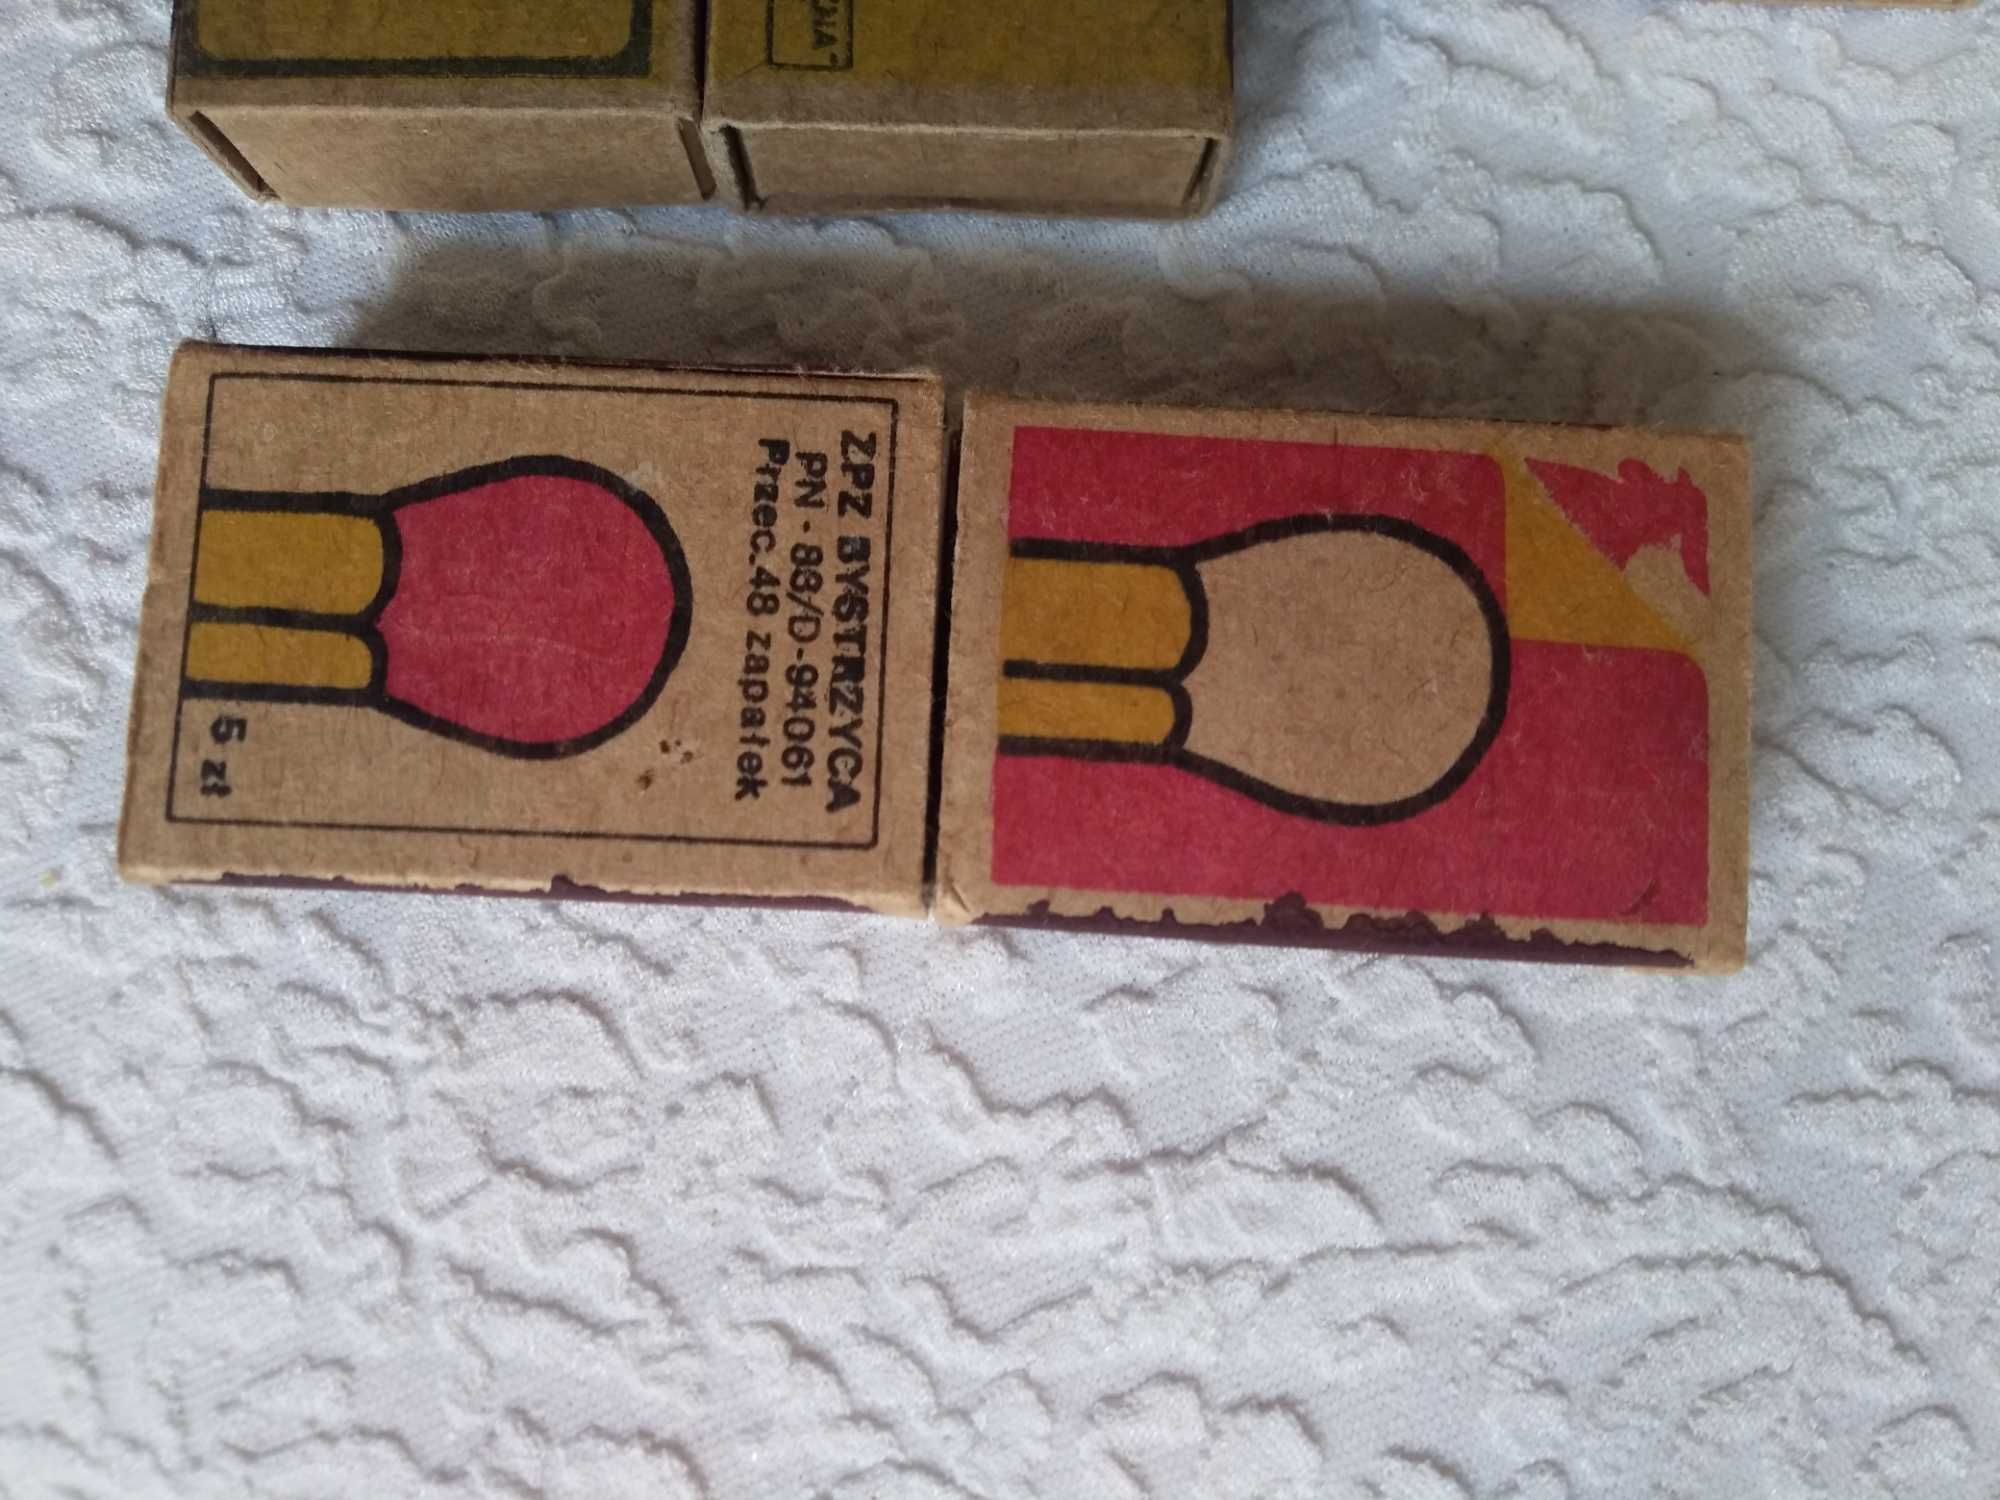 kolekcjonerskie pudełka zapałek z lat 60-80-tych XX w